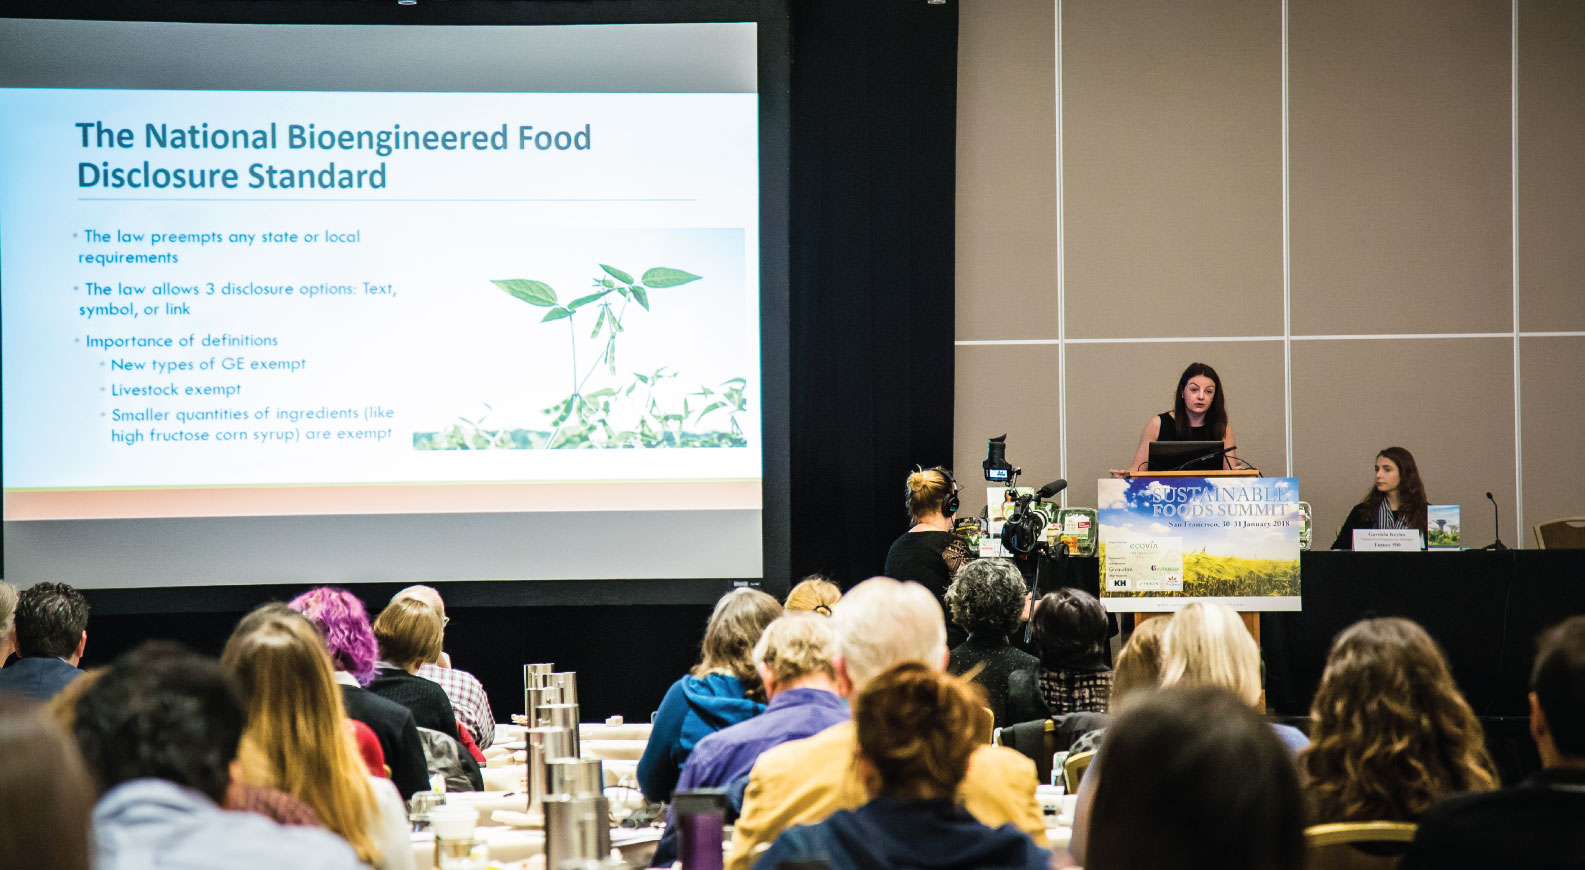 Sustainable Foods Summit North America